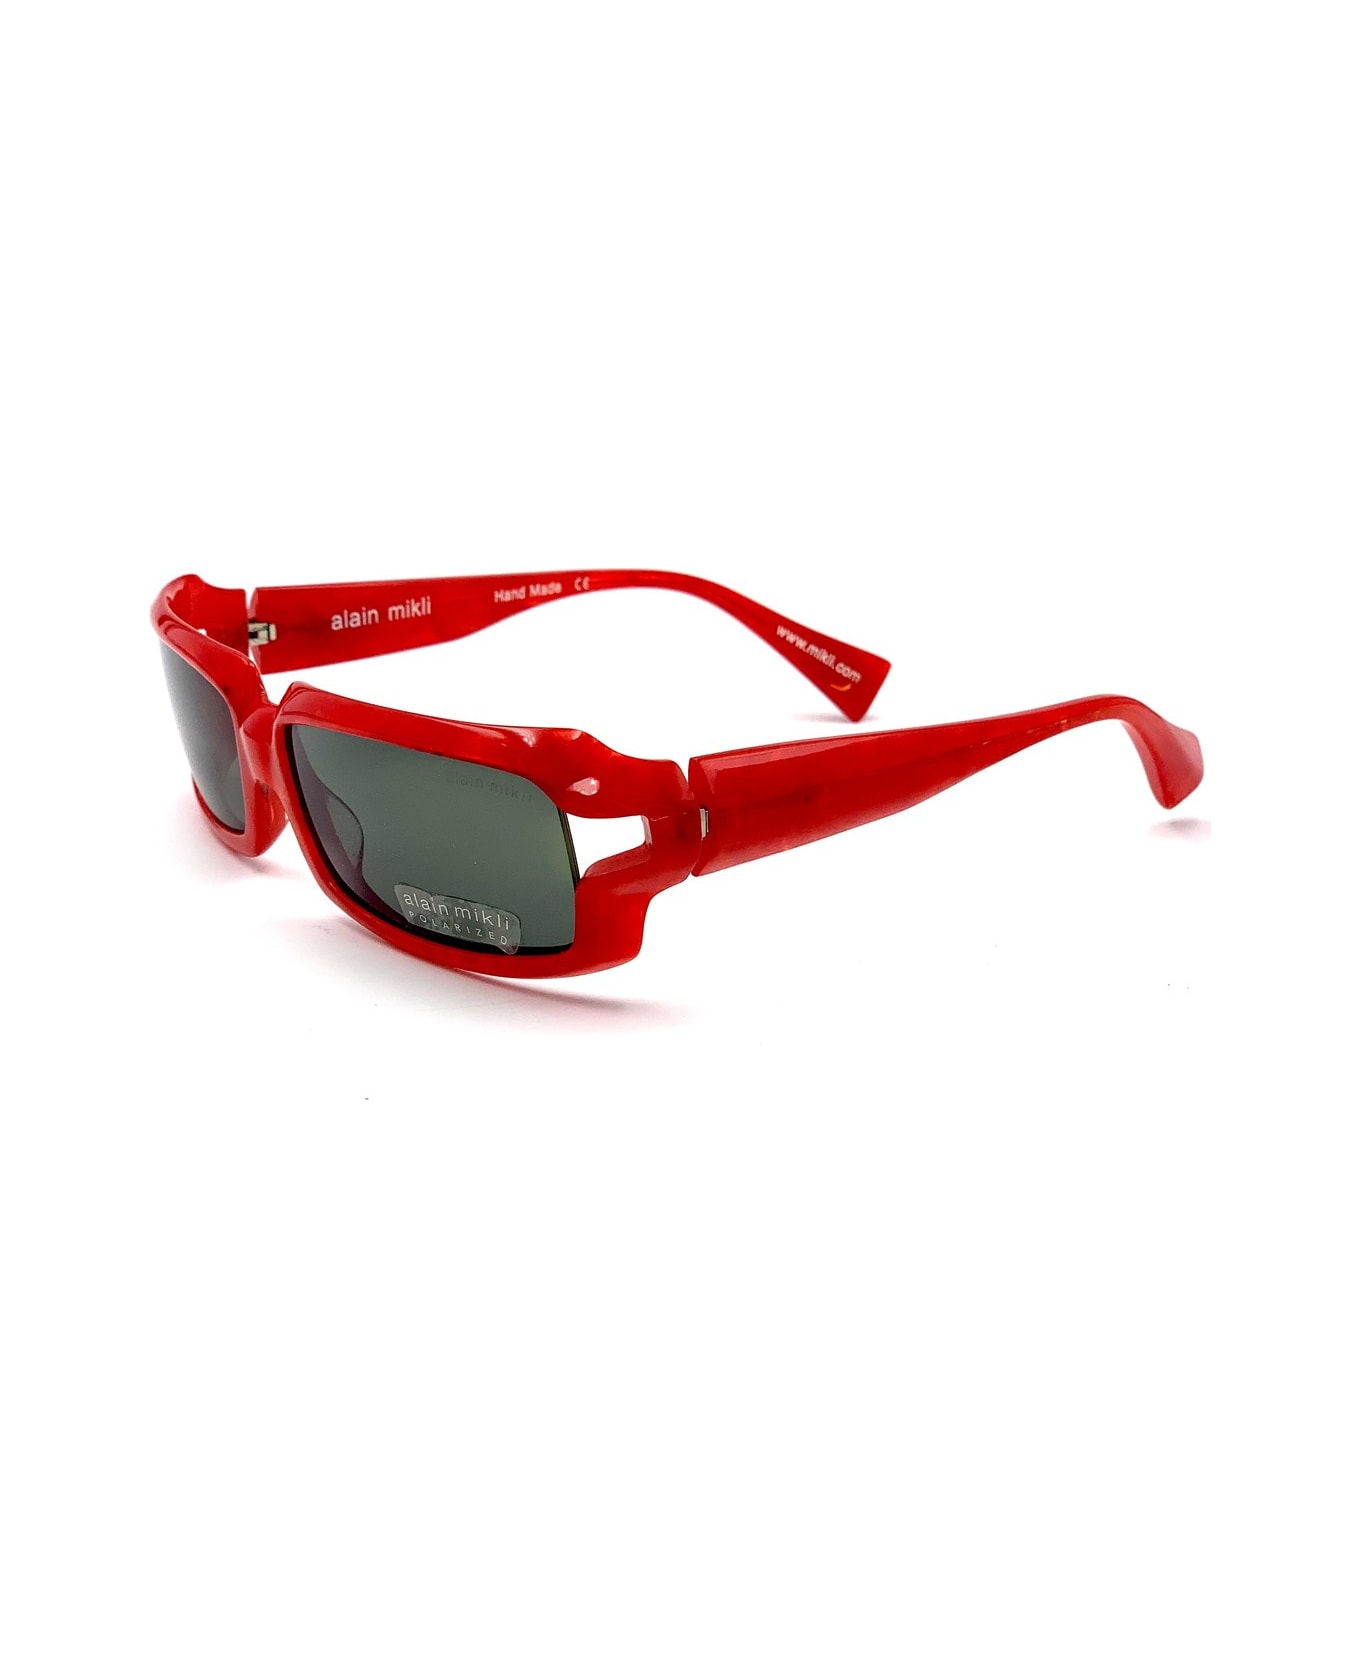 Alain Mikli A0488 Sunglasses - Rosso